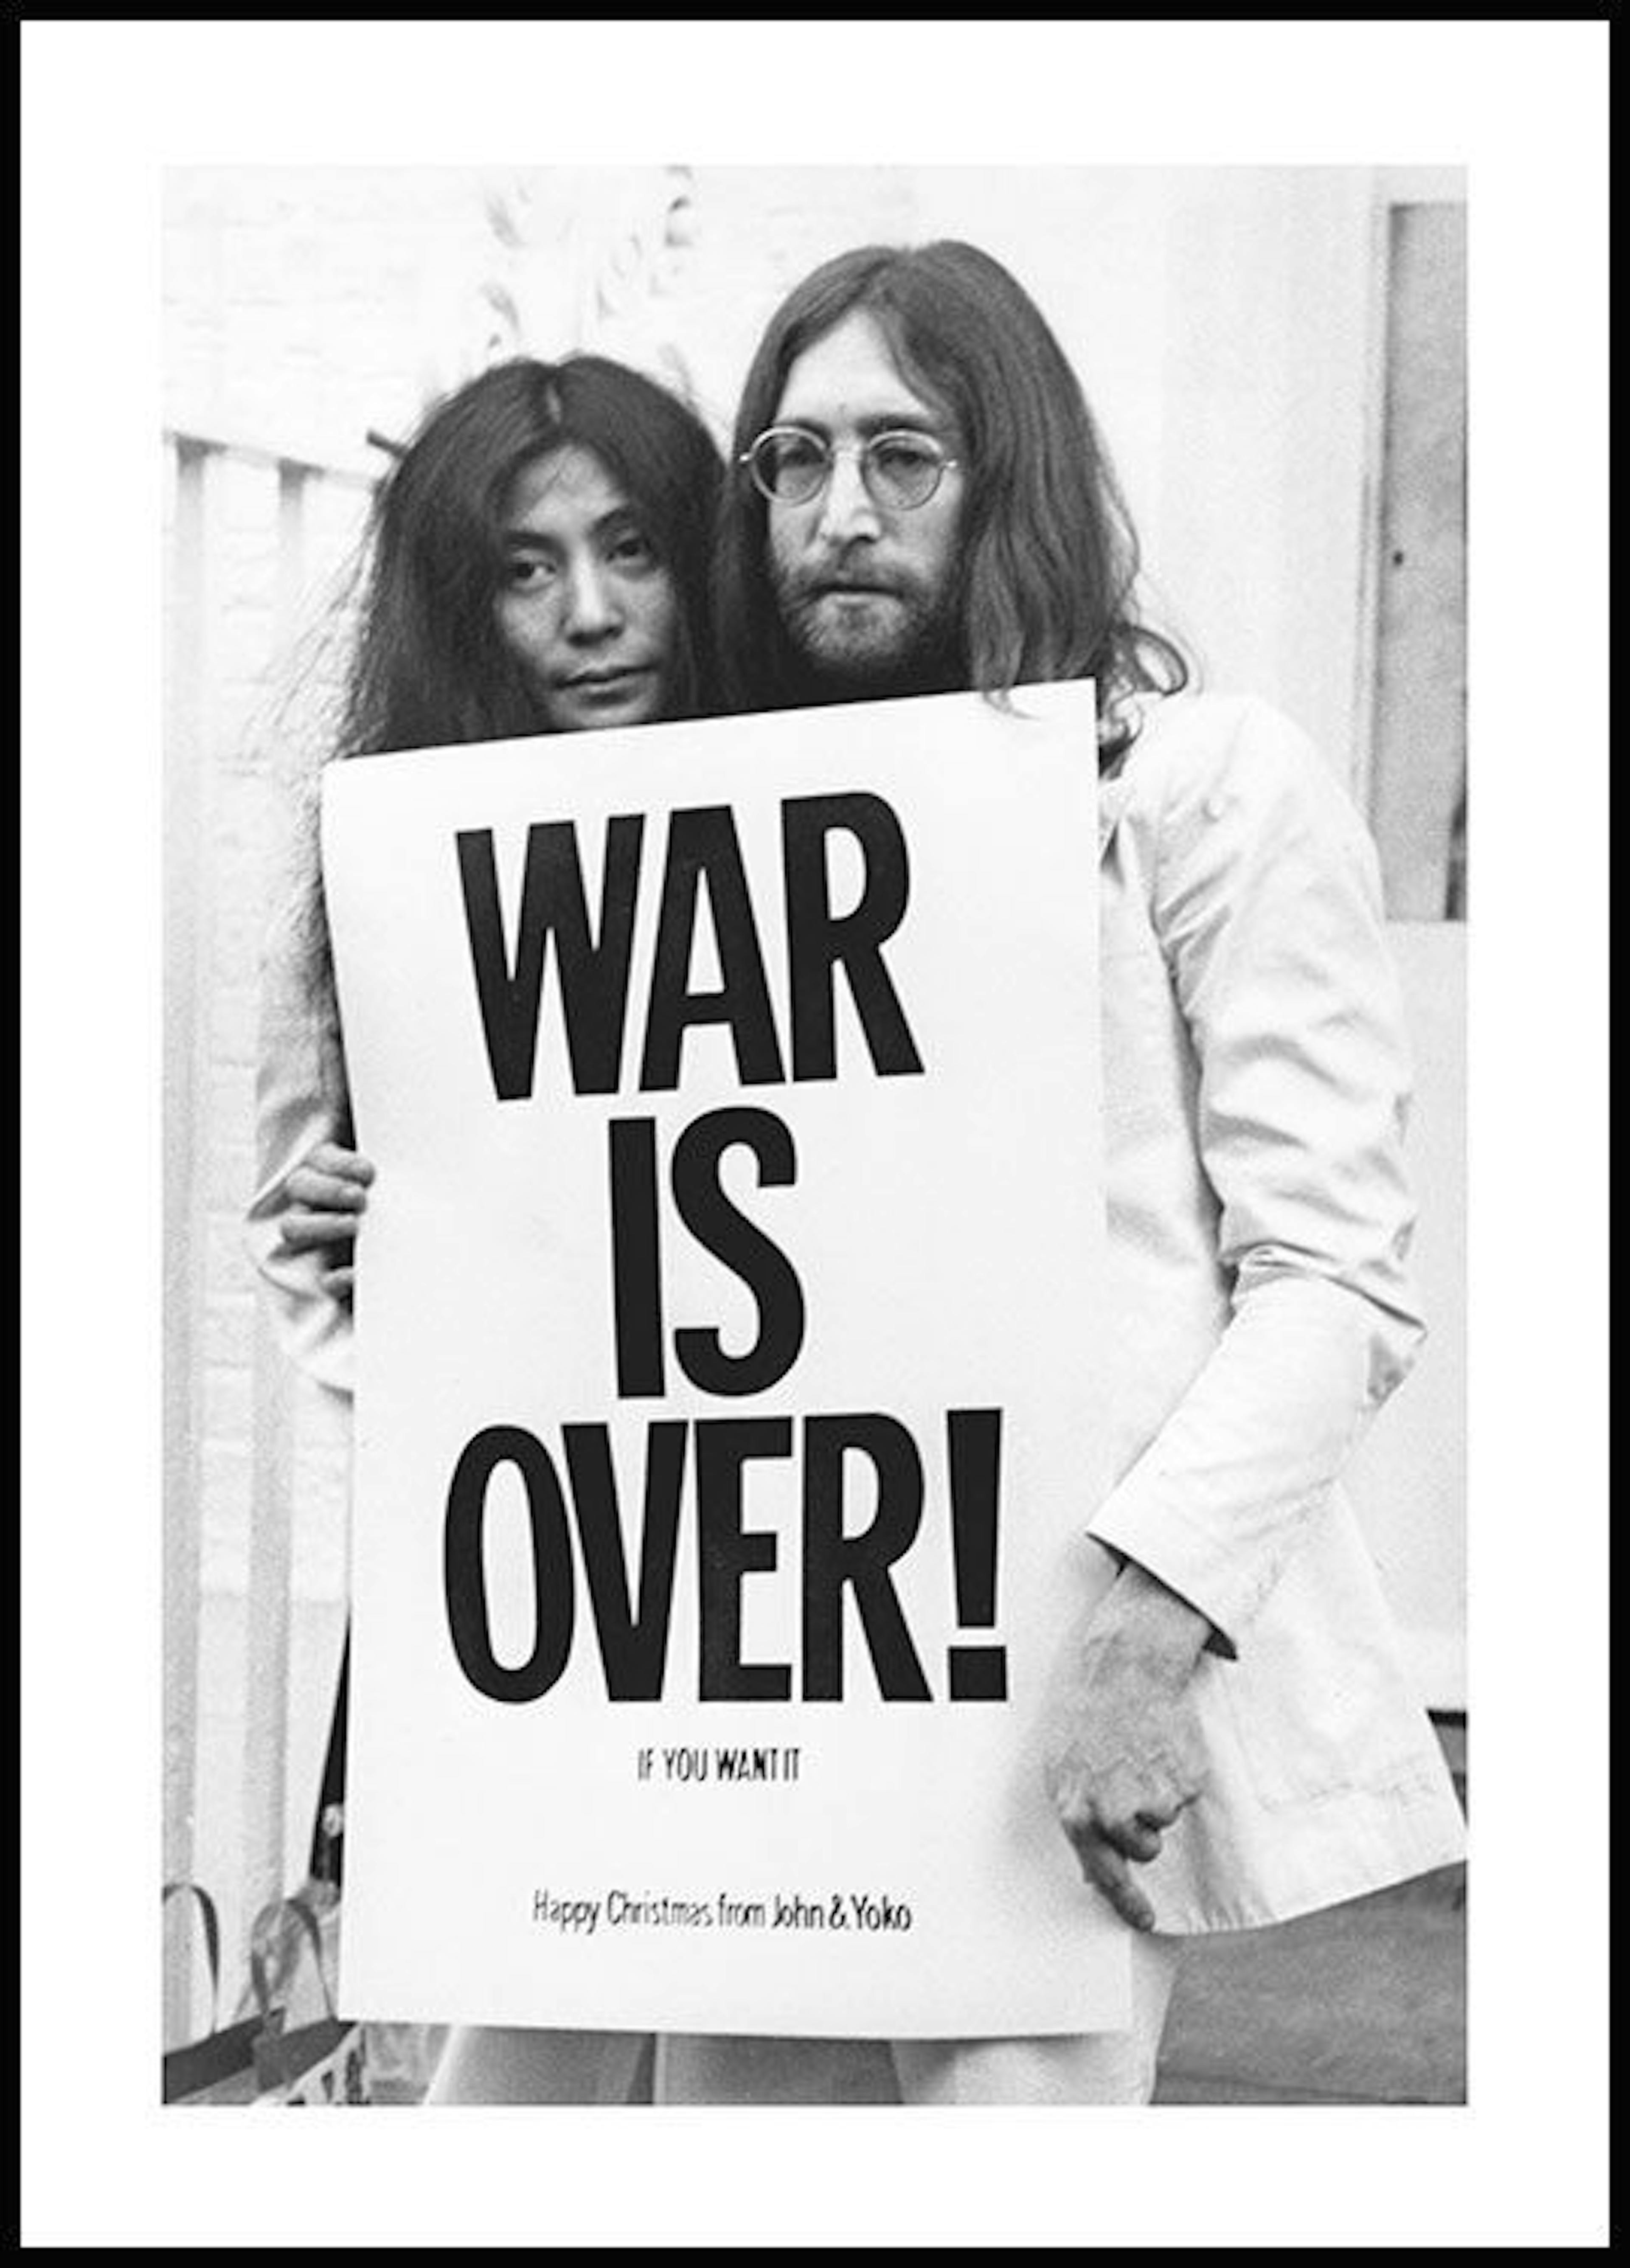 War is Over John Lennon Poster 0